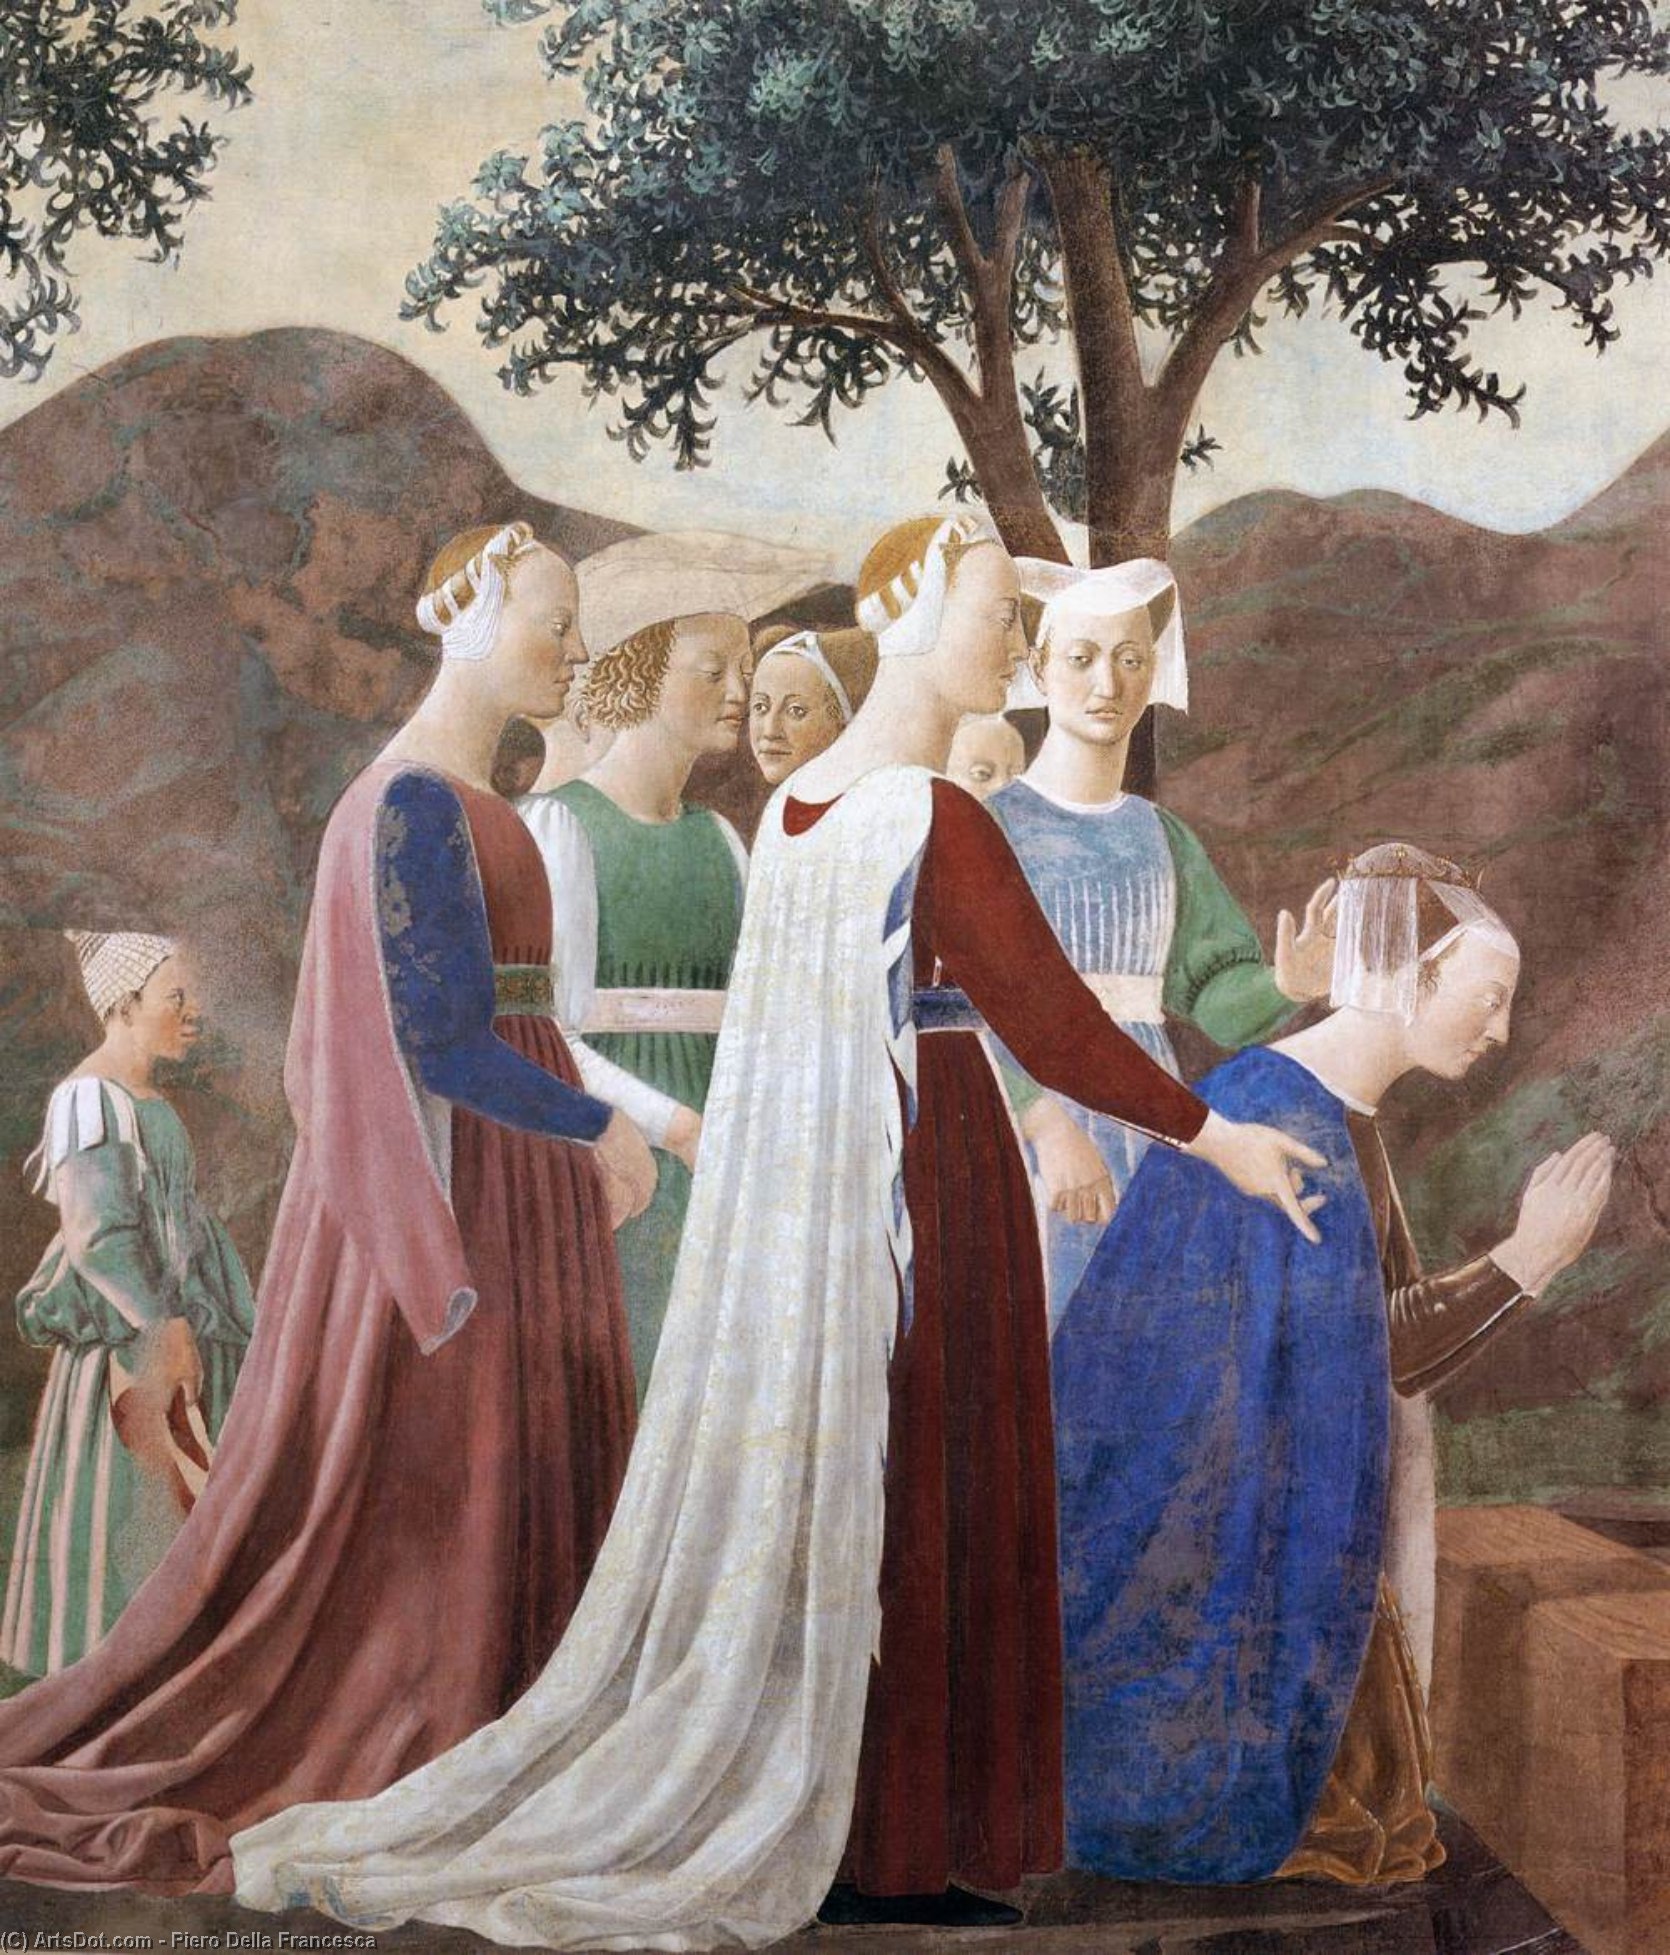 WikiOO.org - אנציקלופדיה לאמנויות יפות - ציור, יצירות אמנות Piero Della Francesca - 2a. Procession of the Queen of Sheba (detail)